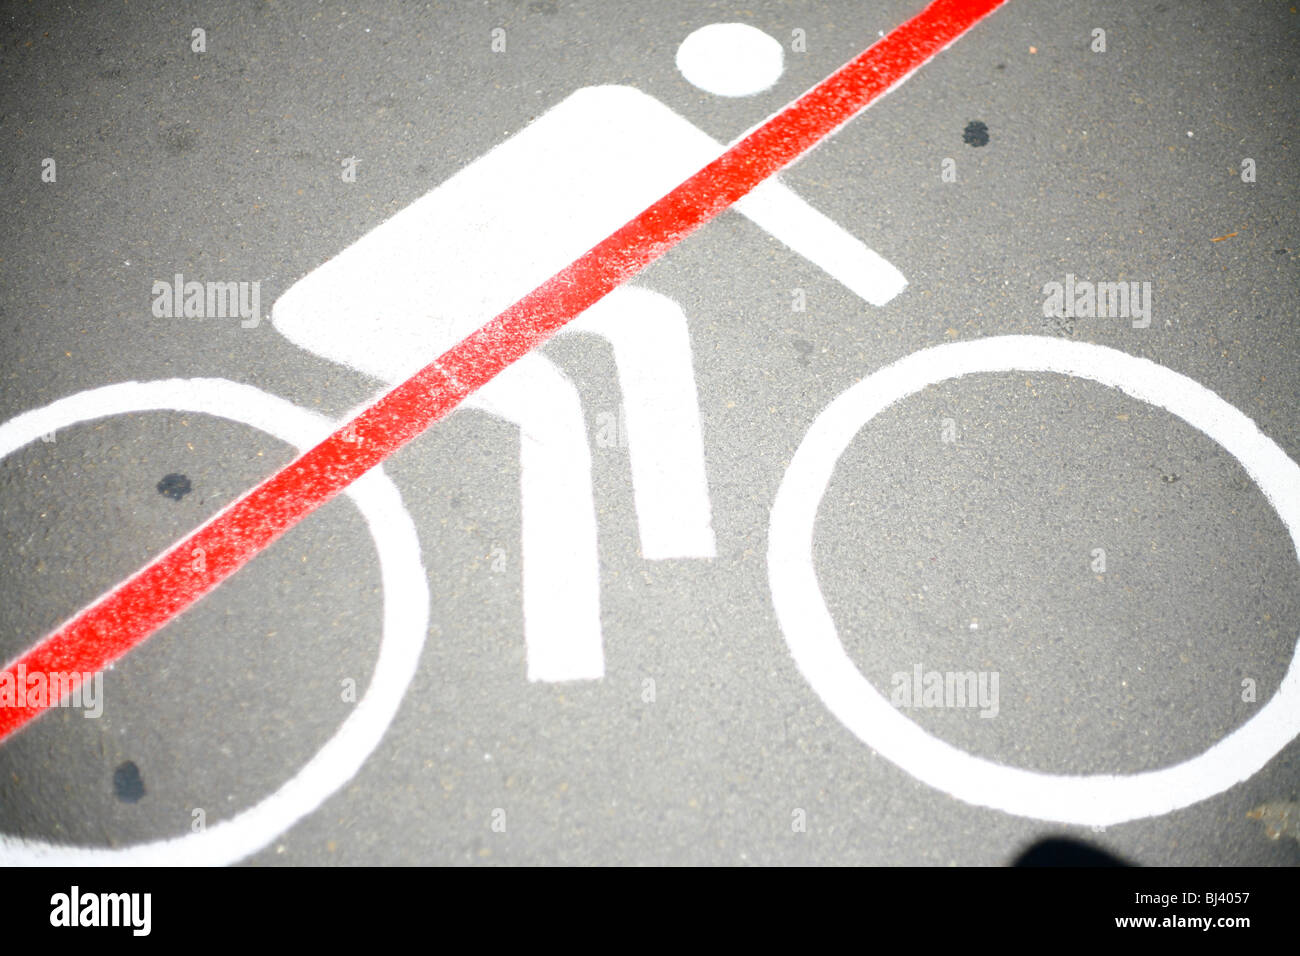 Pictogramm, interdiction de vélo, Melbourne, Victoria, Australie Banque D'Images